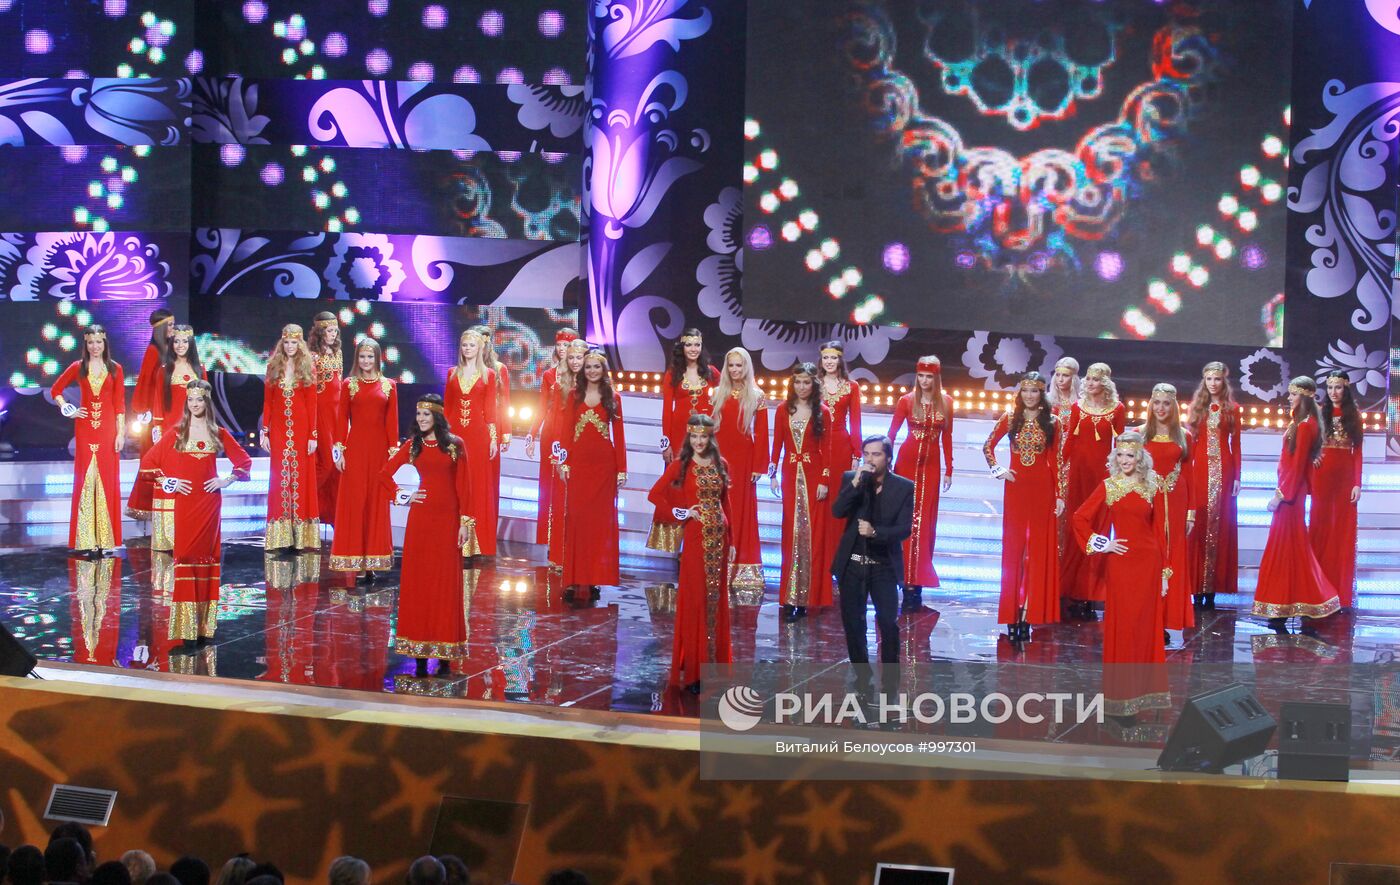 Финал конкурса "Краса России-2011" в Москве